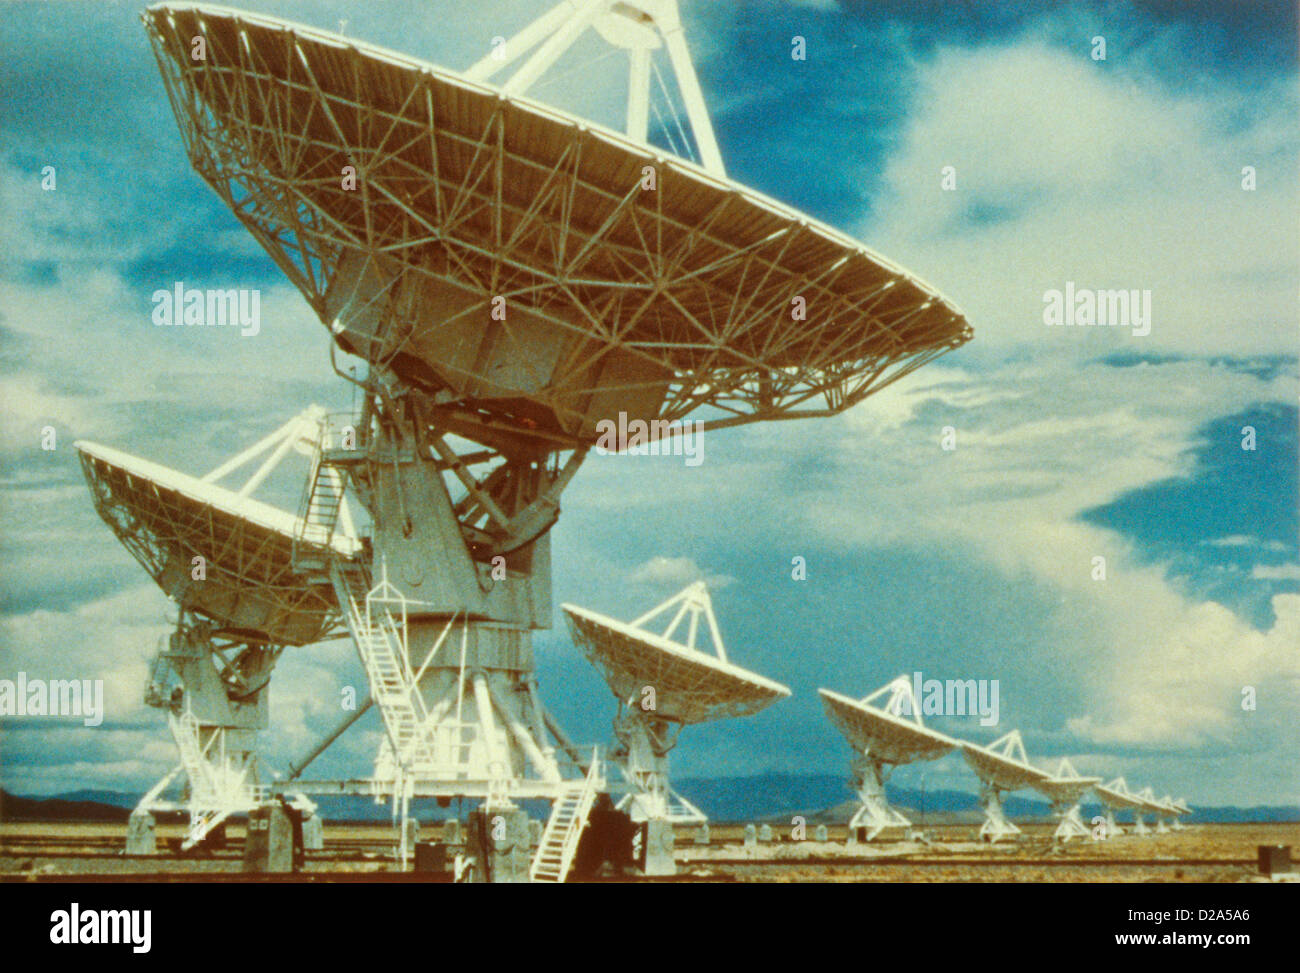 New Mexico, Near Socorro. 82-Ft. Diameter Radio Telescope Antenna Dish At The Very Large Array. Stock Photo